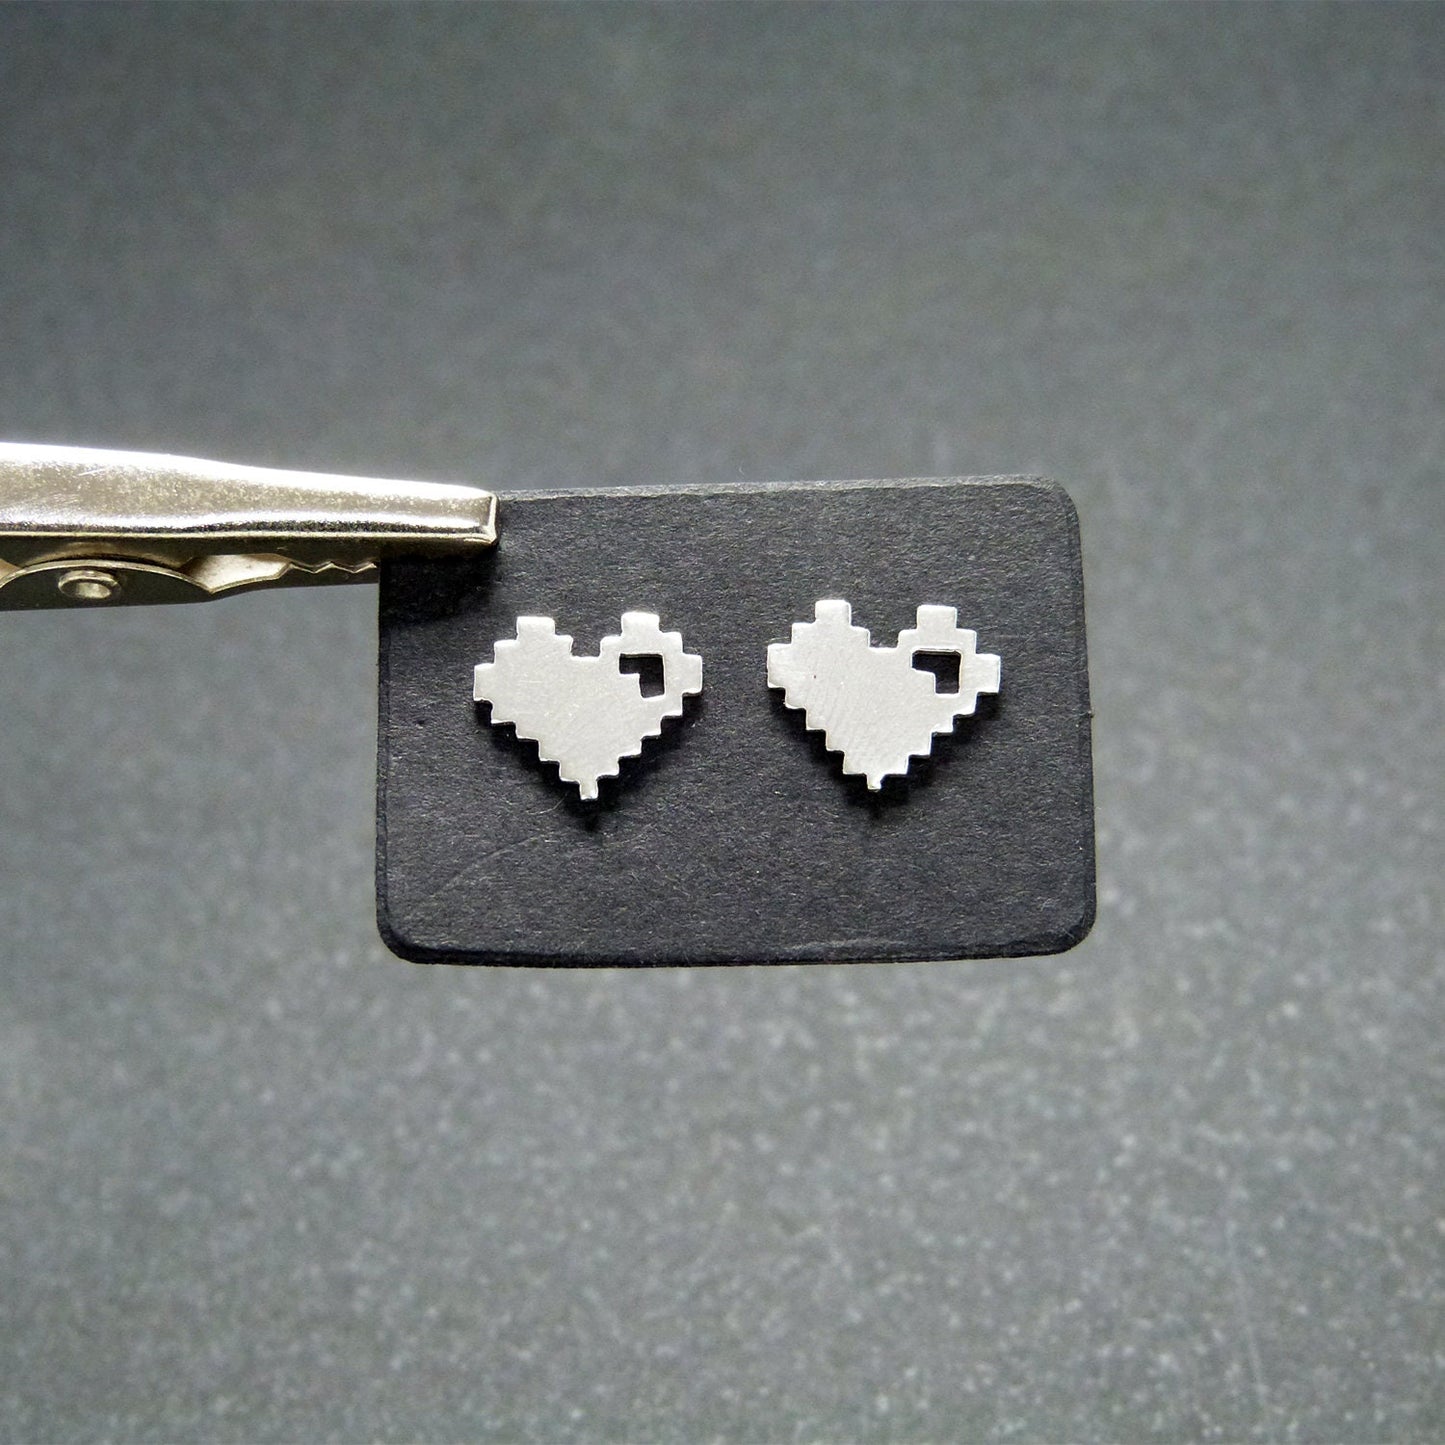 8Bits Hearts earrings in 925 silver